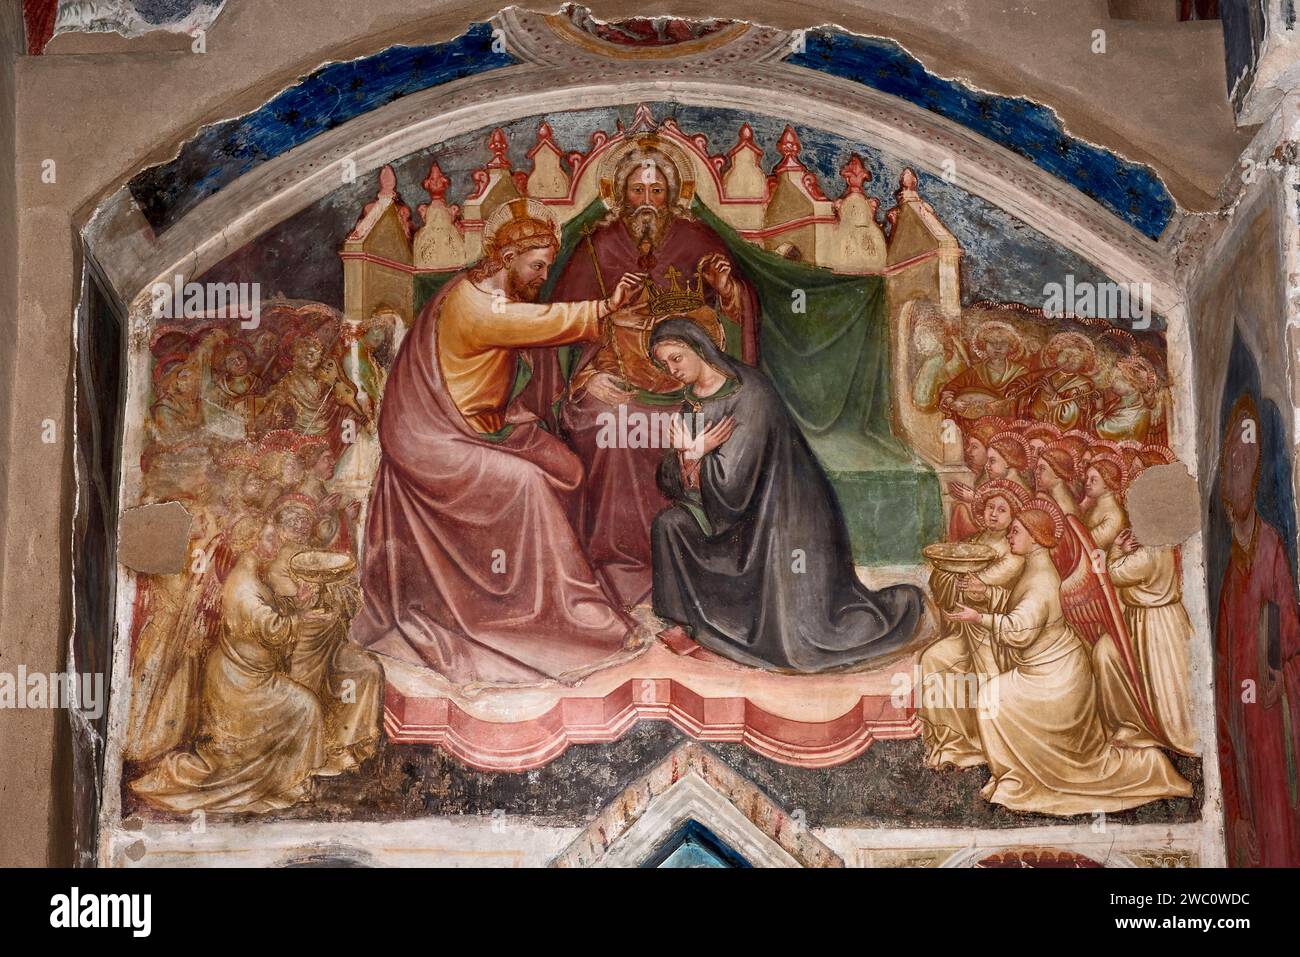 Incoronazione della Vergine - affresco - Martino da Verona - XIV secolo - Verona, chiesa di S. Stefano Banque D'Images